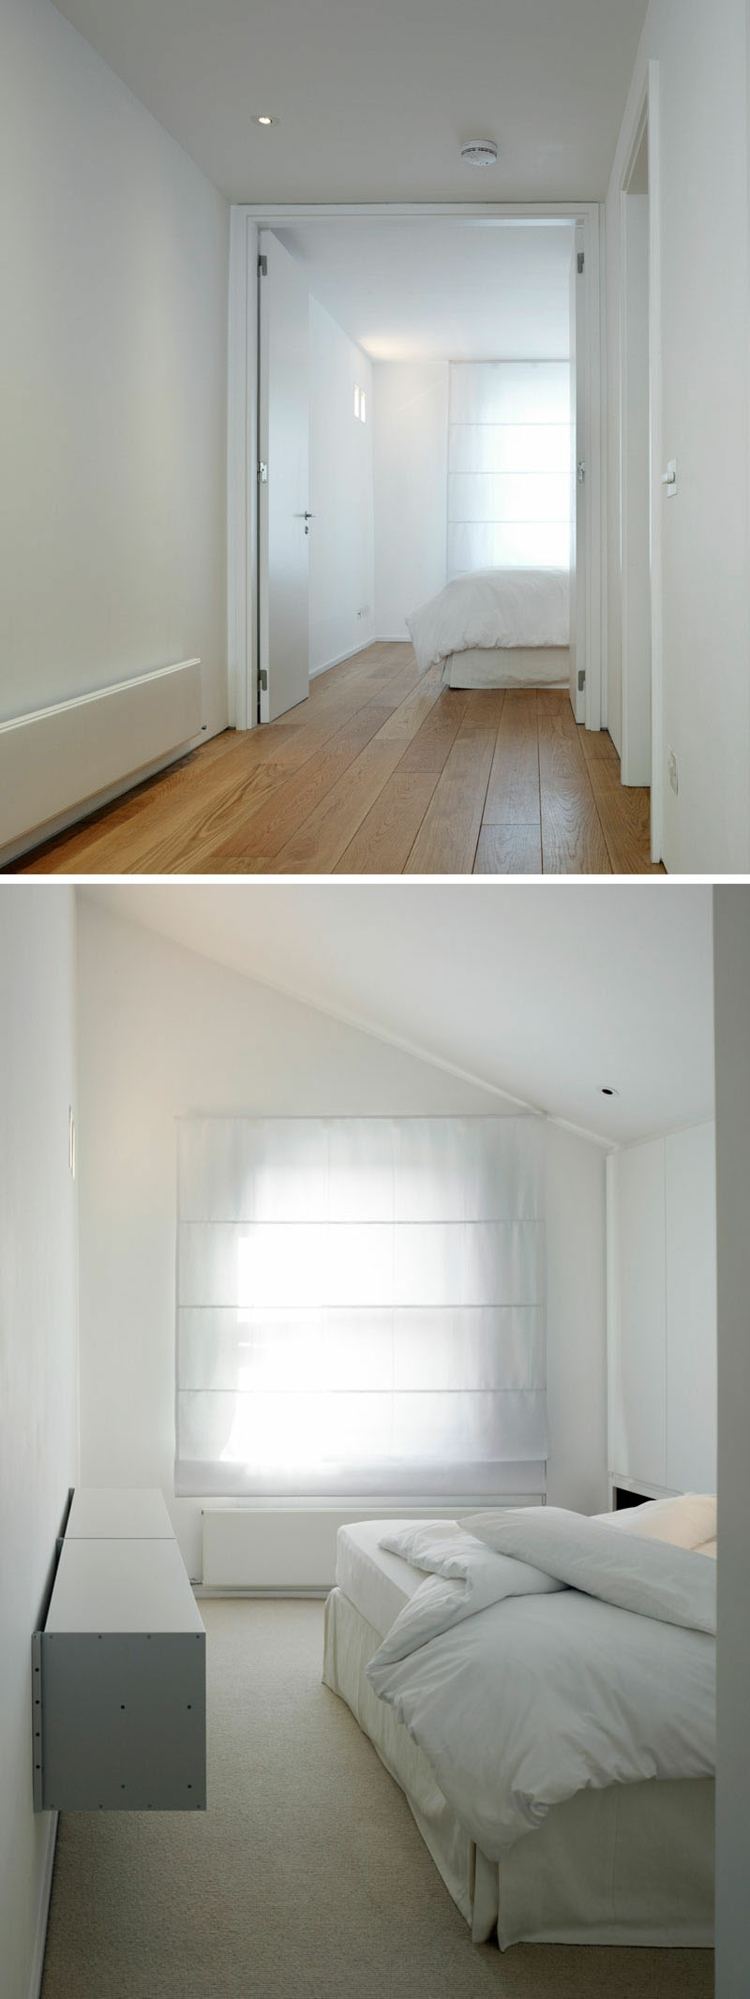 sovrum-säng-vit-minimalistisk-vägg-design-10